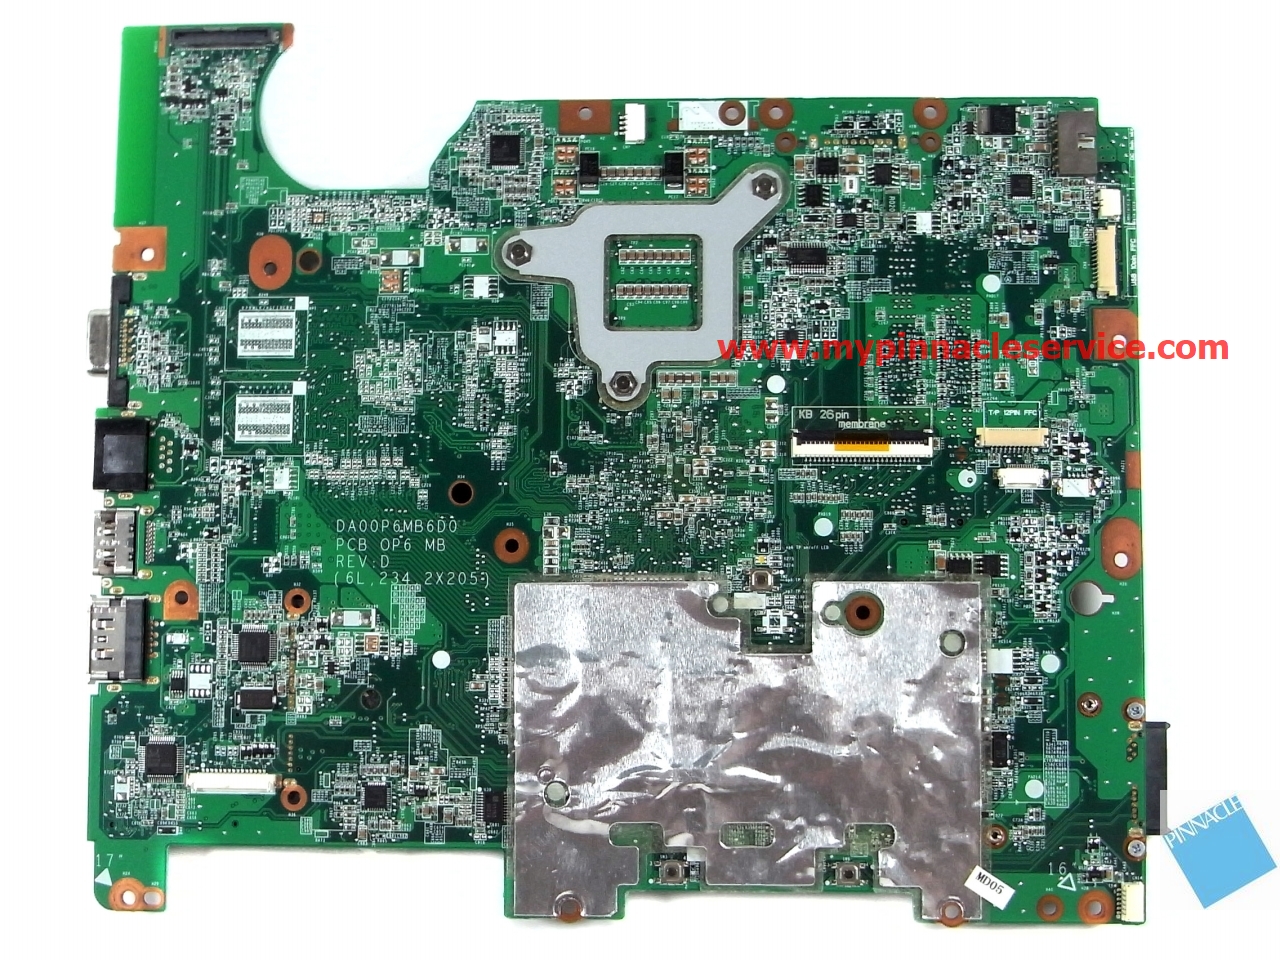 578053-001 Motherboard for HP G61 Compaq Presario CQ61 DAOOP6MB6D0  31OP6MB0160